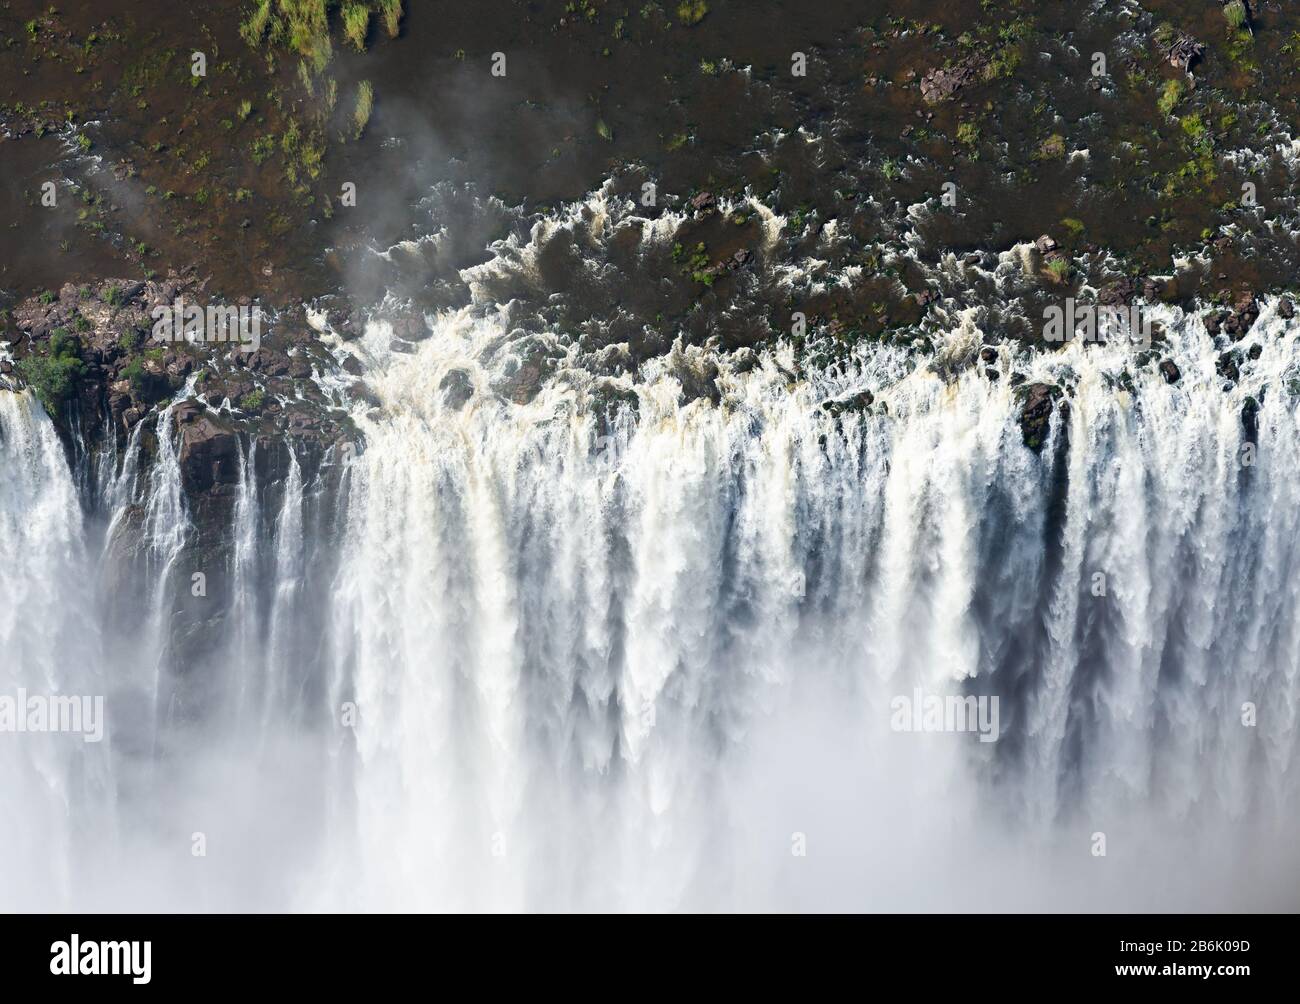 Vue aérienne d'un volume impressionnant d'eau qui coule à Victoria Falls, au Zimbabwe, en Afrique. Vue de haut point sur les chutes d'eau. Brouillard et vaporisation à partir de l'eau. Banque D'Images